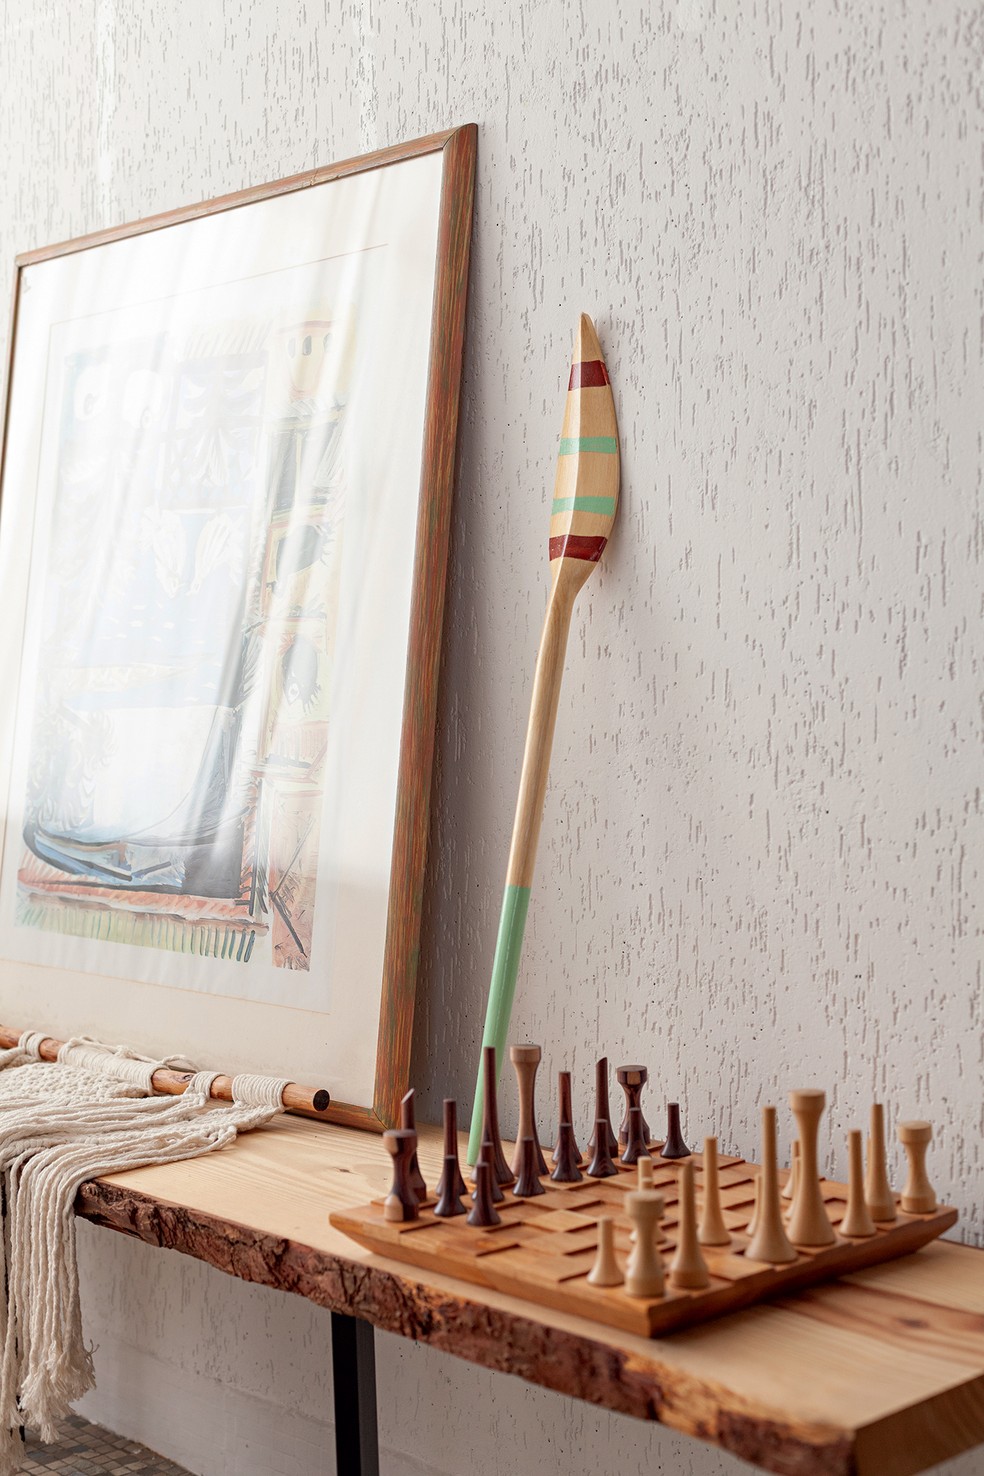 DETALHES | Na foto destacam-se o jogo de xadrez esculpido em madeira, da Wood School, e o remo, feito por artesão, comprado em Paraty — Foto: Mayra Azzi / Editora Globo